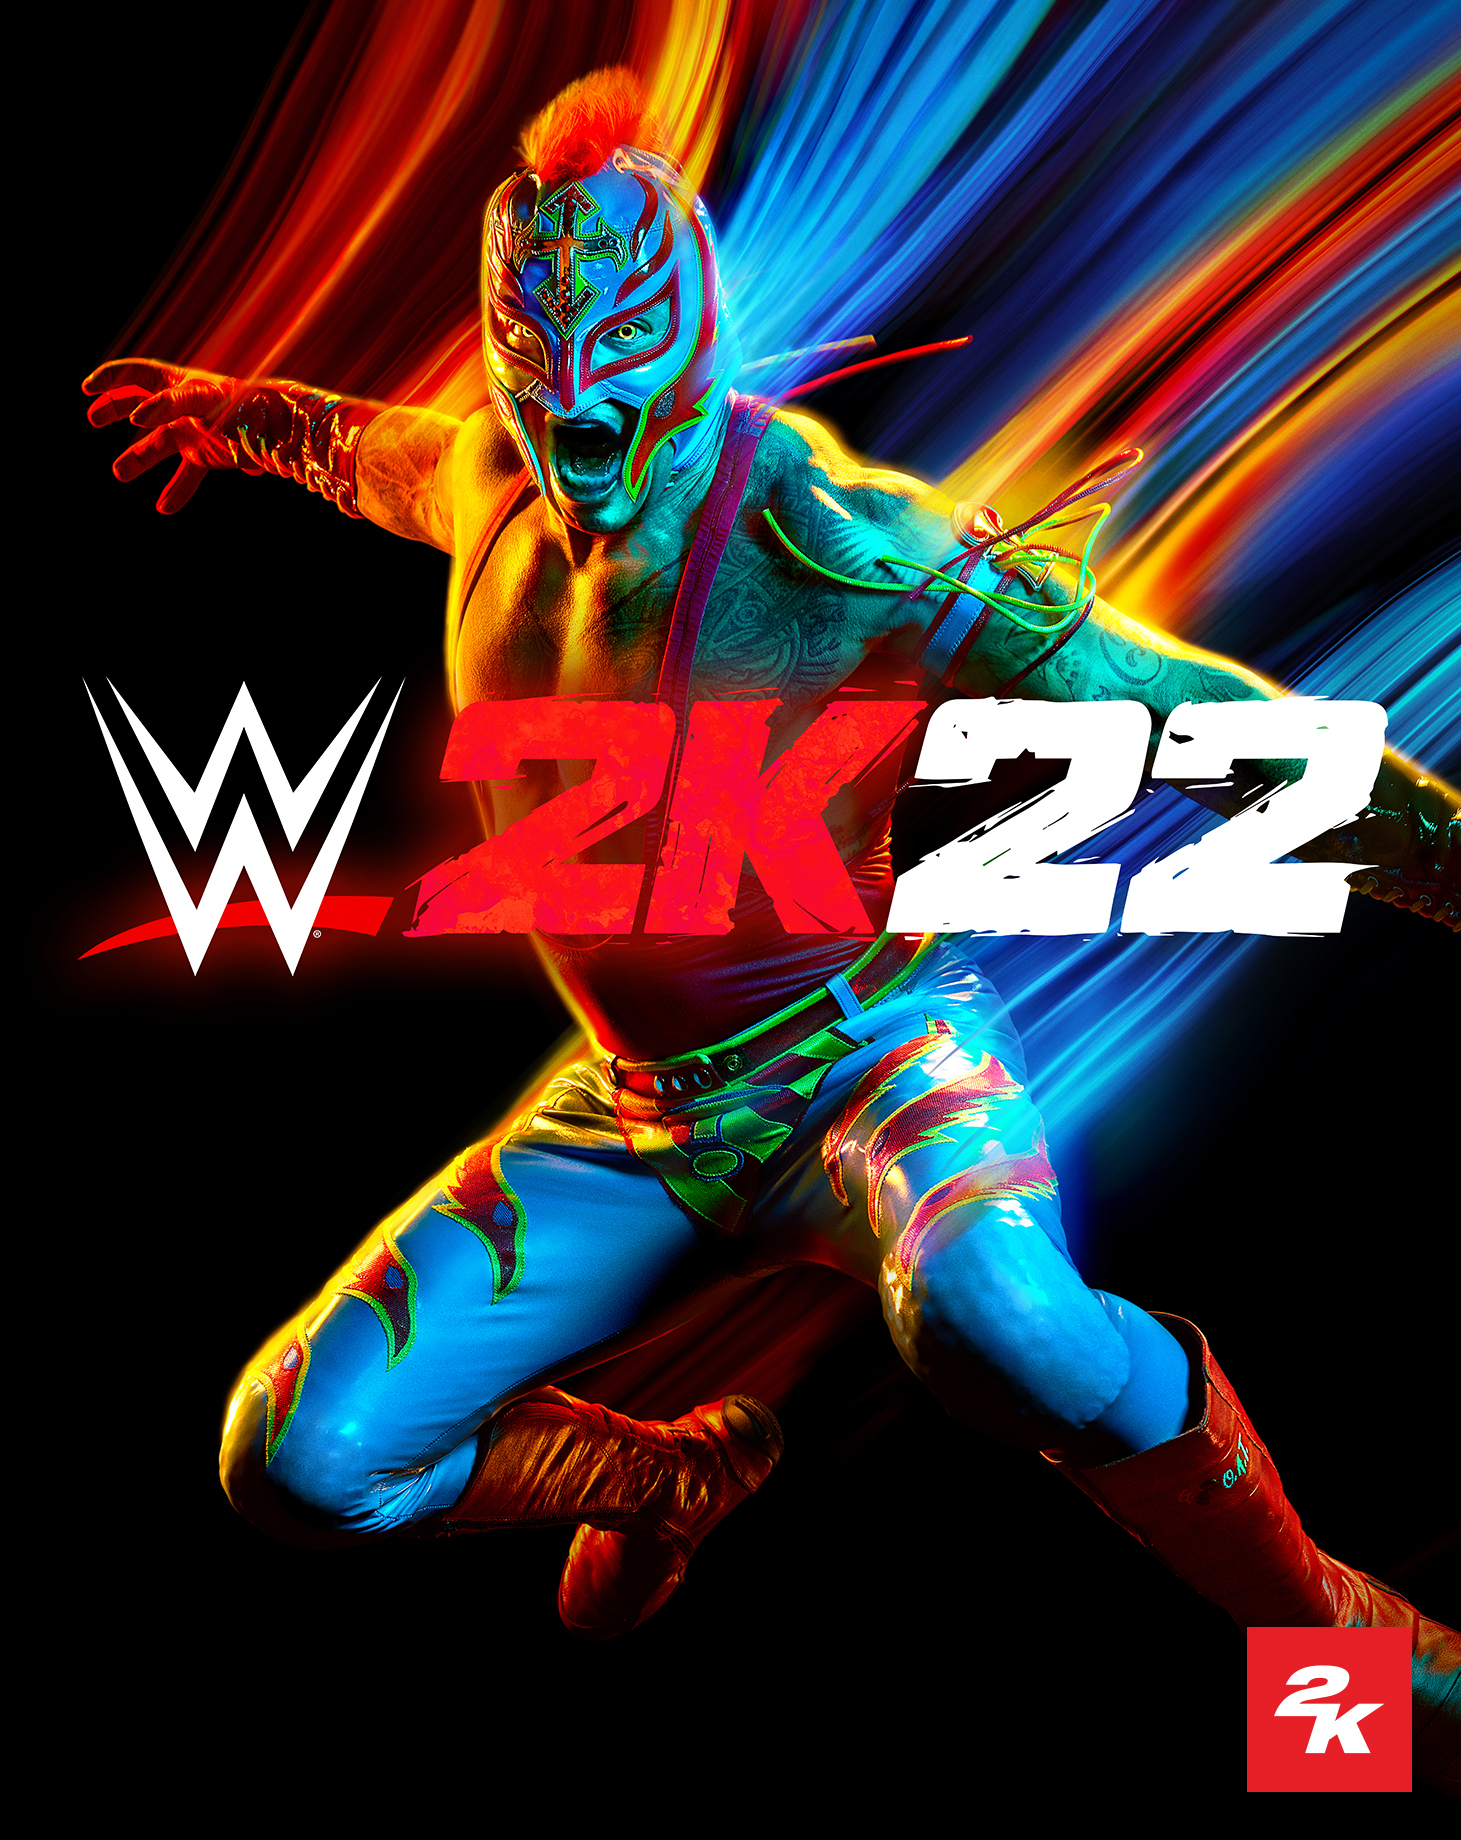 33+] WWE 2K22 Wallpapers - WallpaperSafari